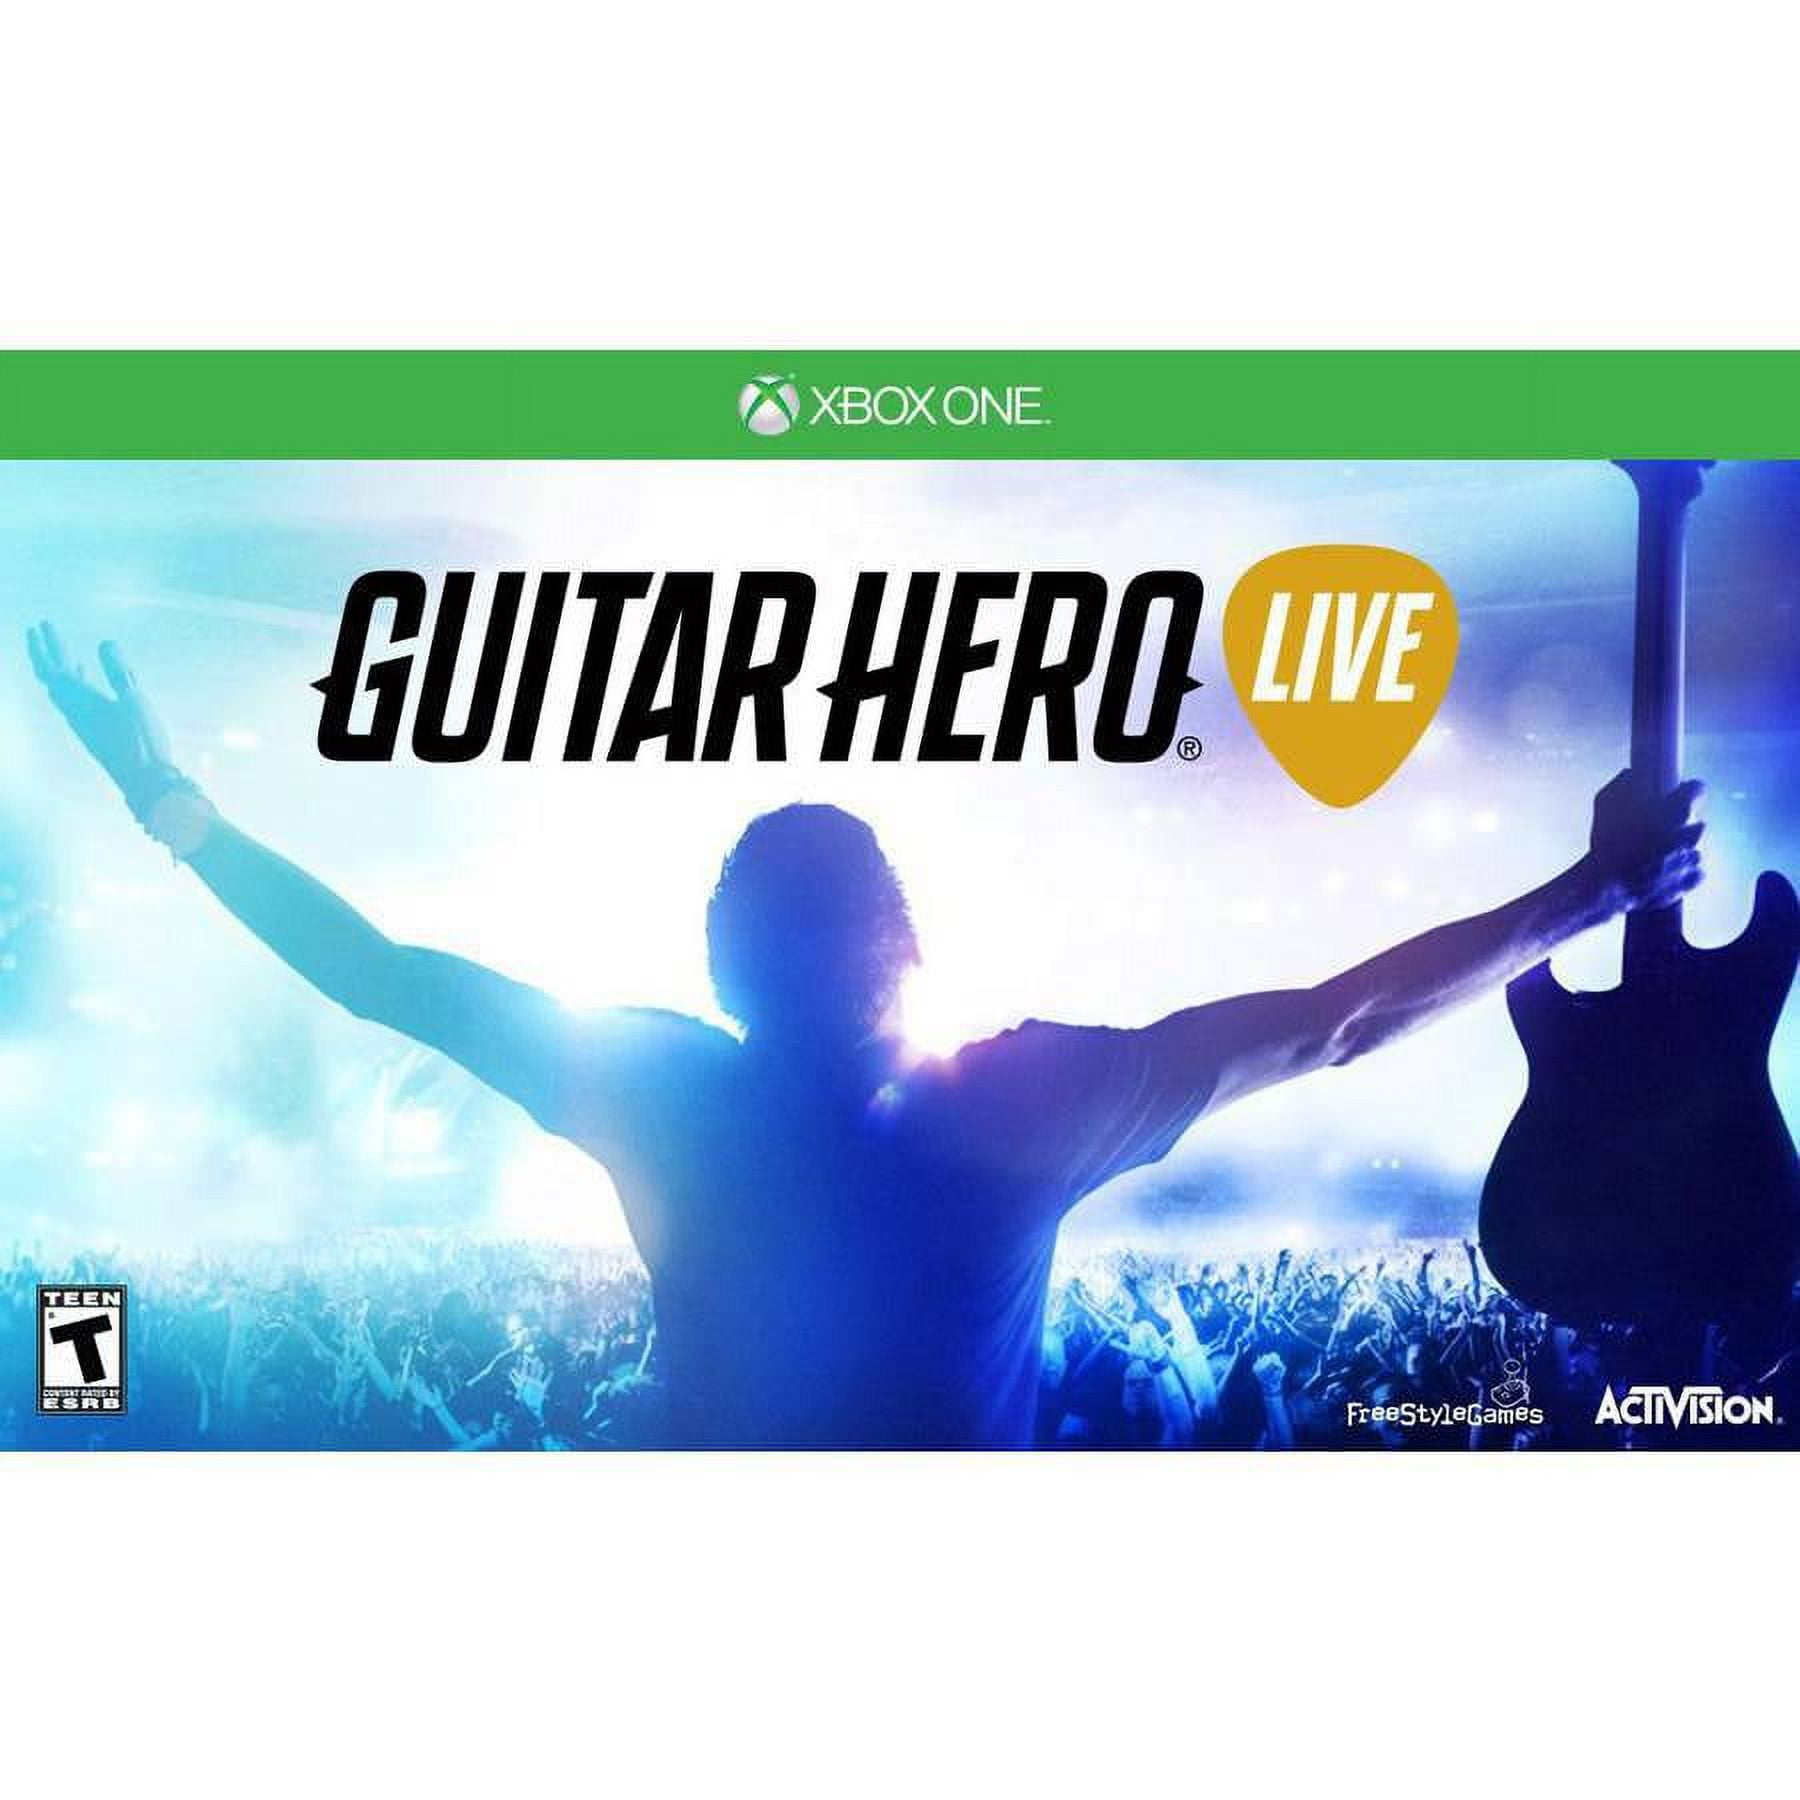 band hero - jogo musical para xbox 360 - Retro Games